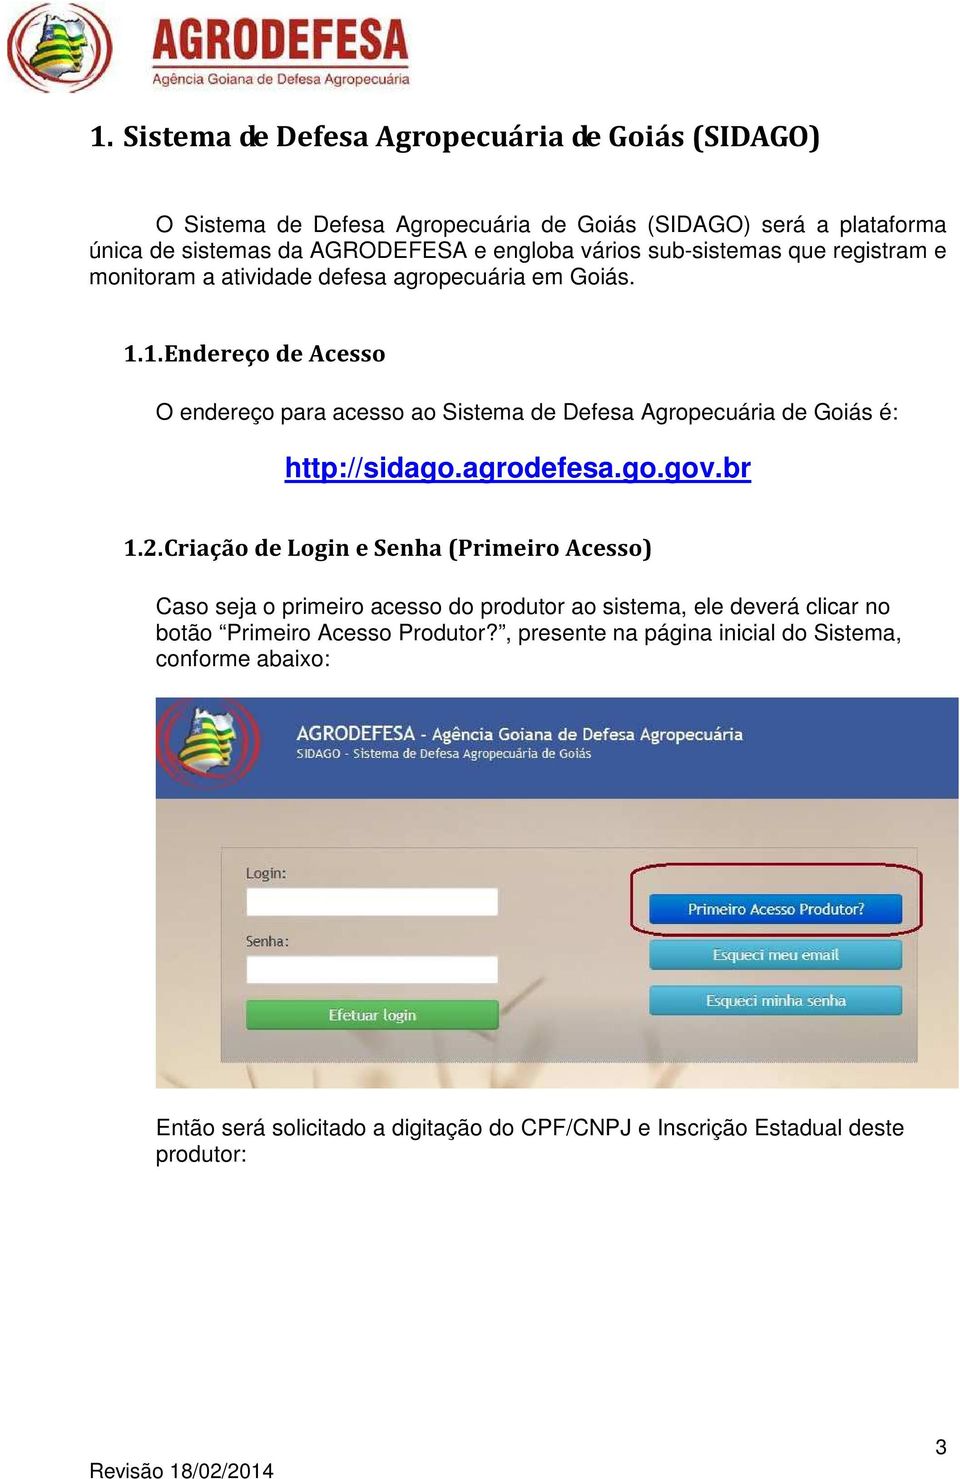 1. Endereço de Acesso O endereço para acesso ao Sistema de Defesa Agropecuária de Goiás é: http://sidago.agrodefesa.go.gov.br 1.2.